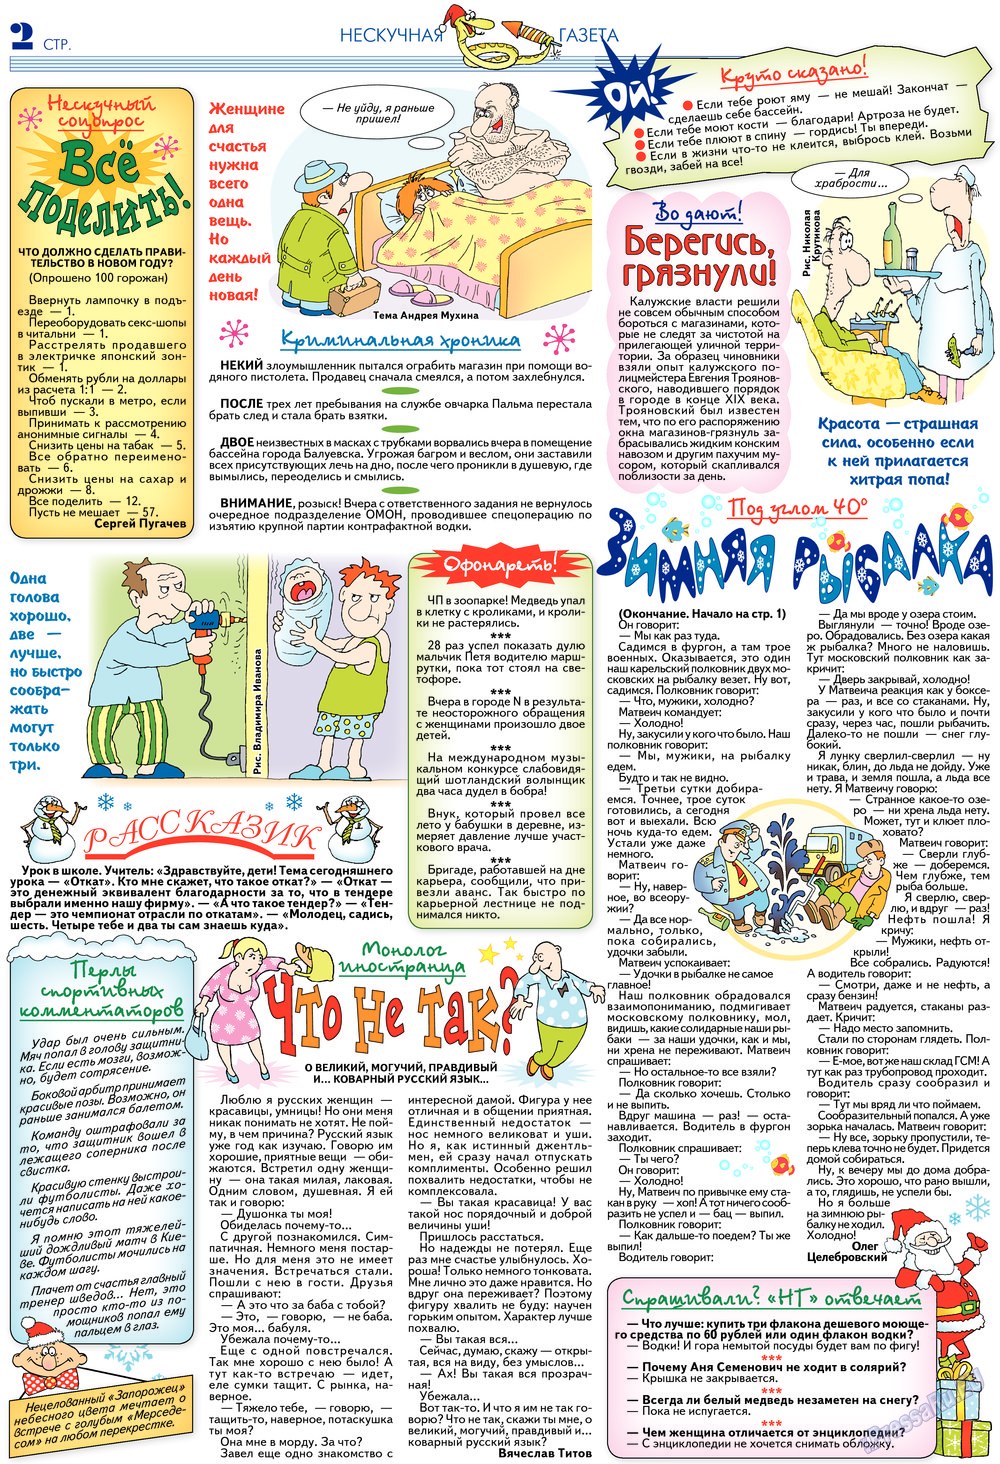 Нескучная газета (журнал). 2013 год, номер 2, стр. 2